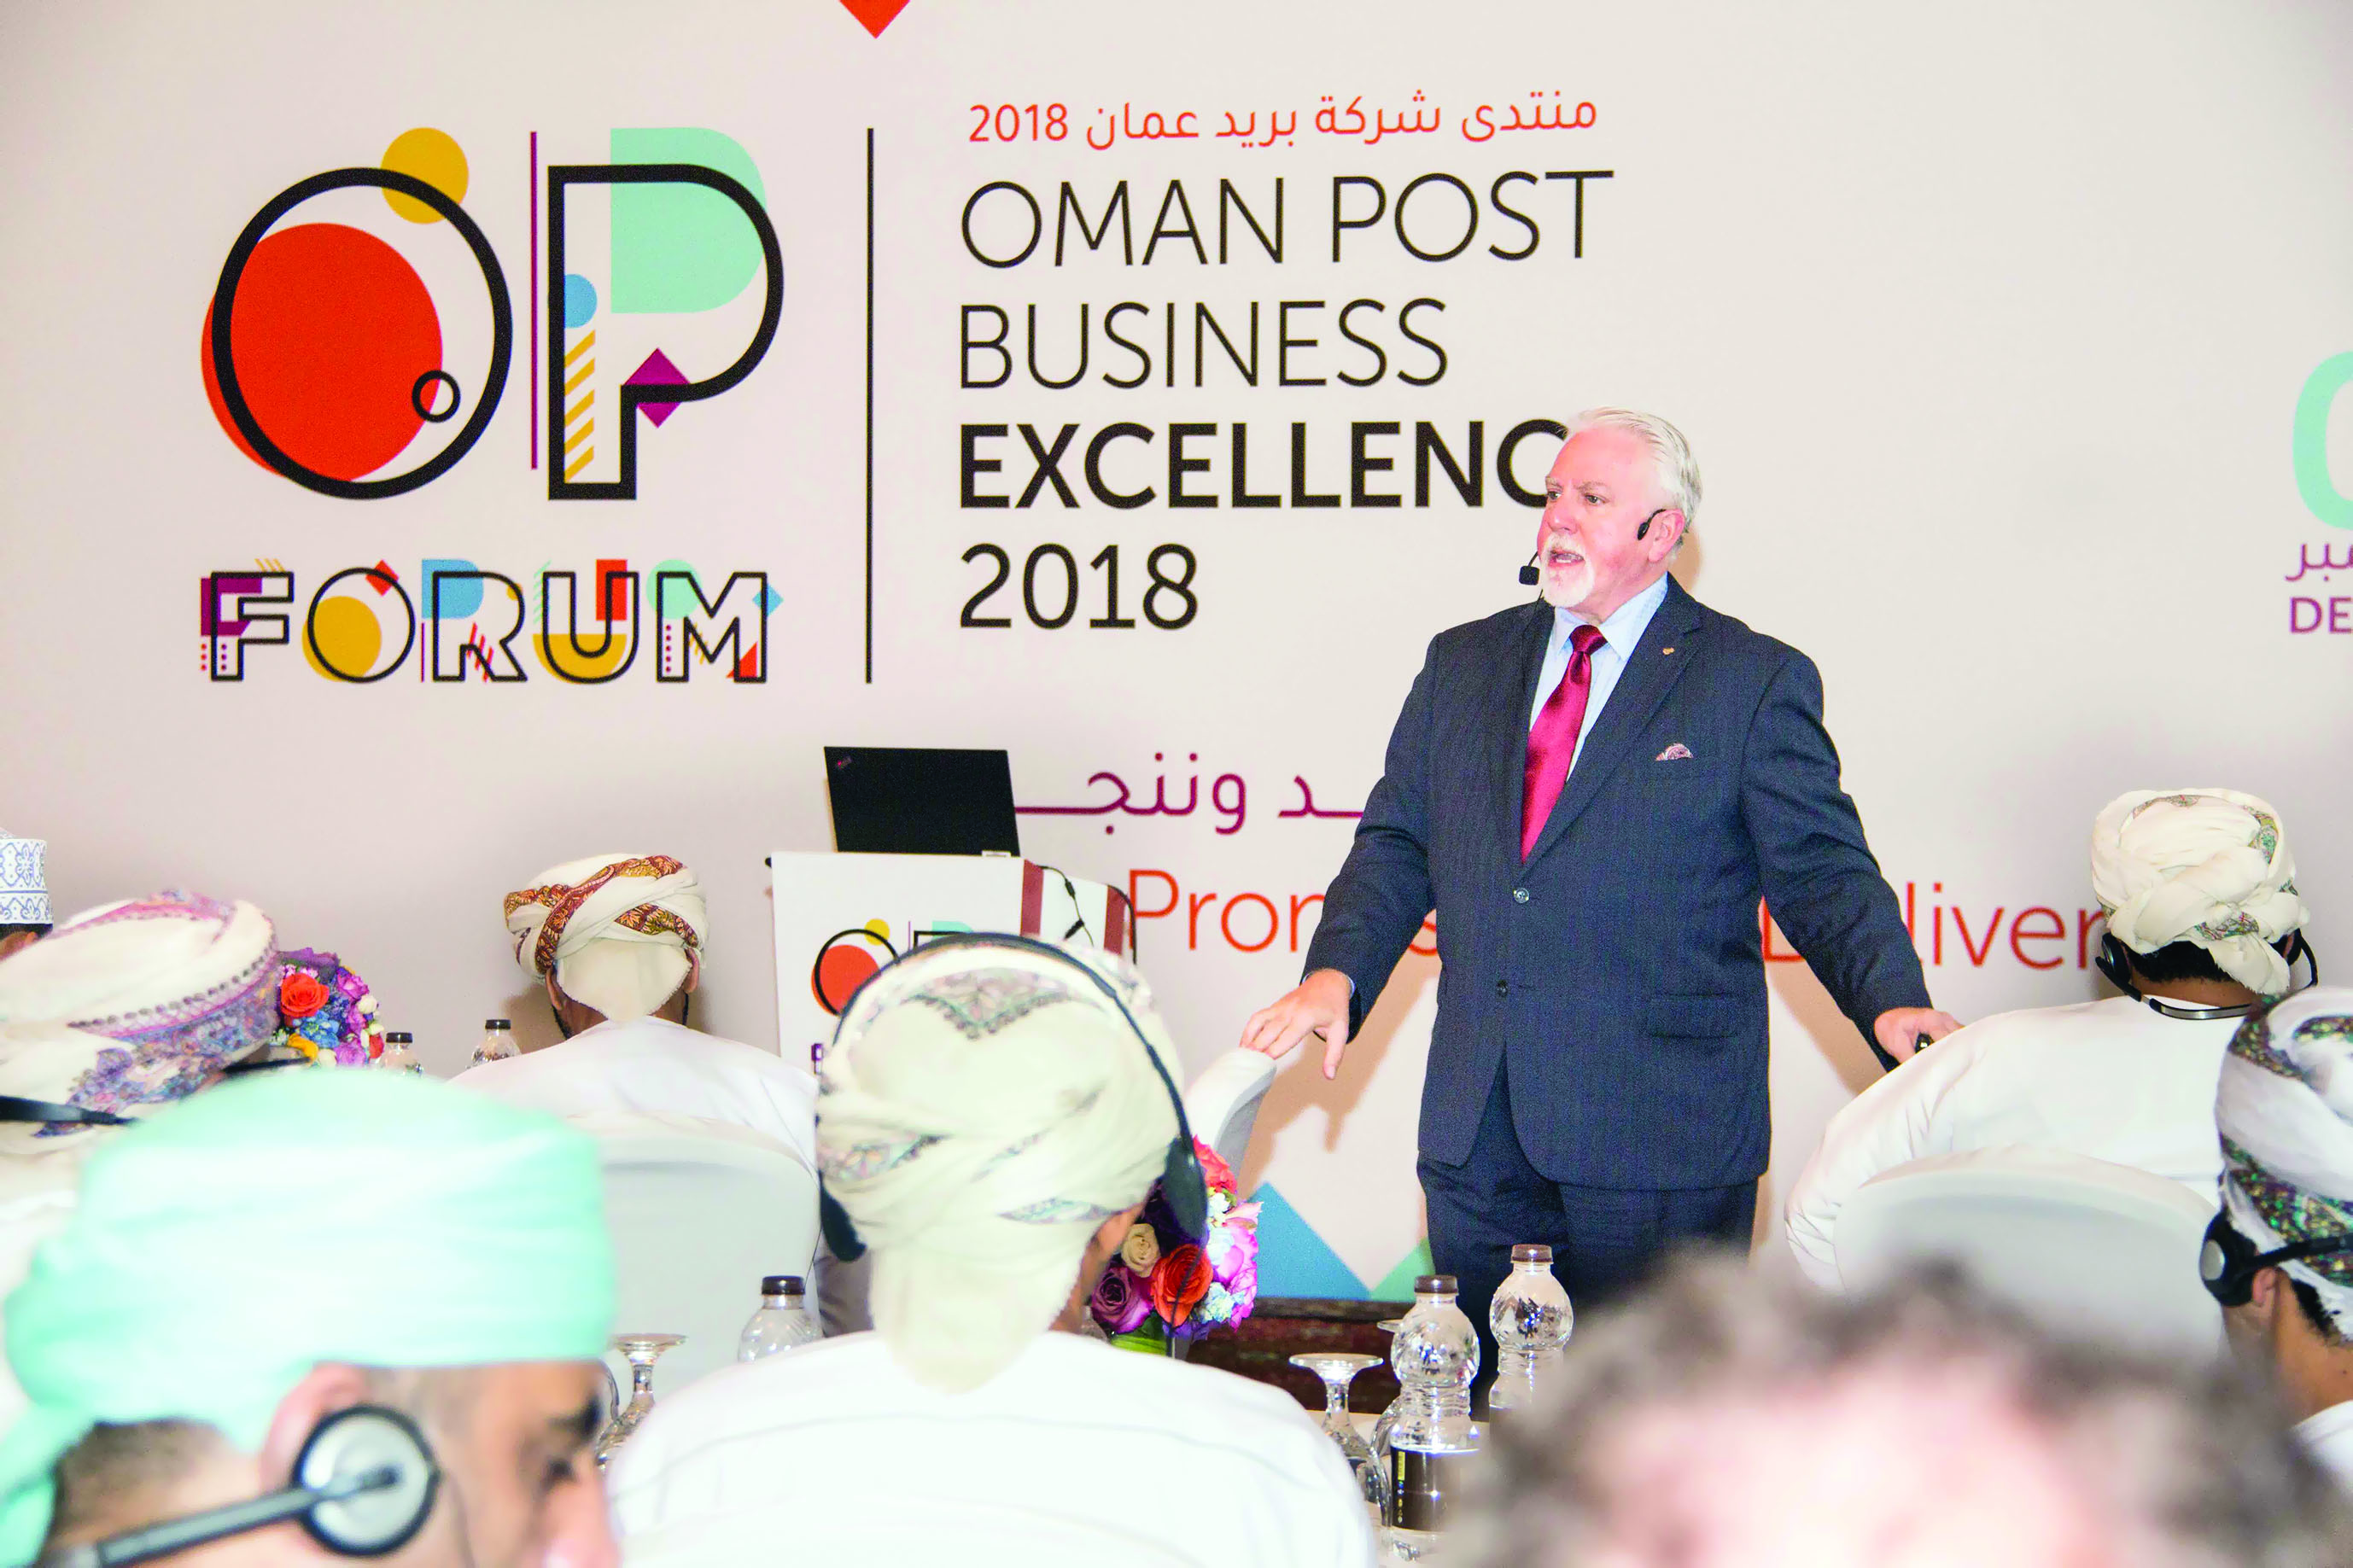 بريد عمان: الجودة بخدمة الزبائن في مقدمة الأولويات